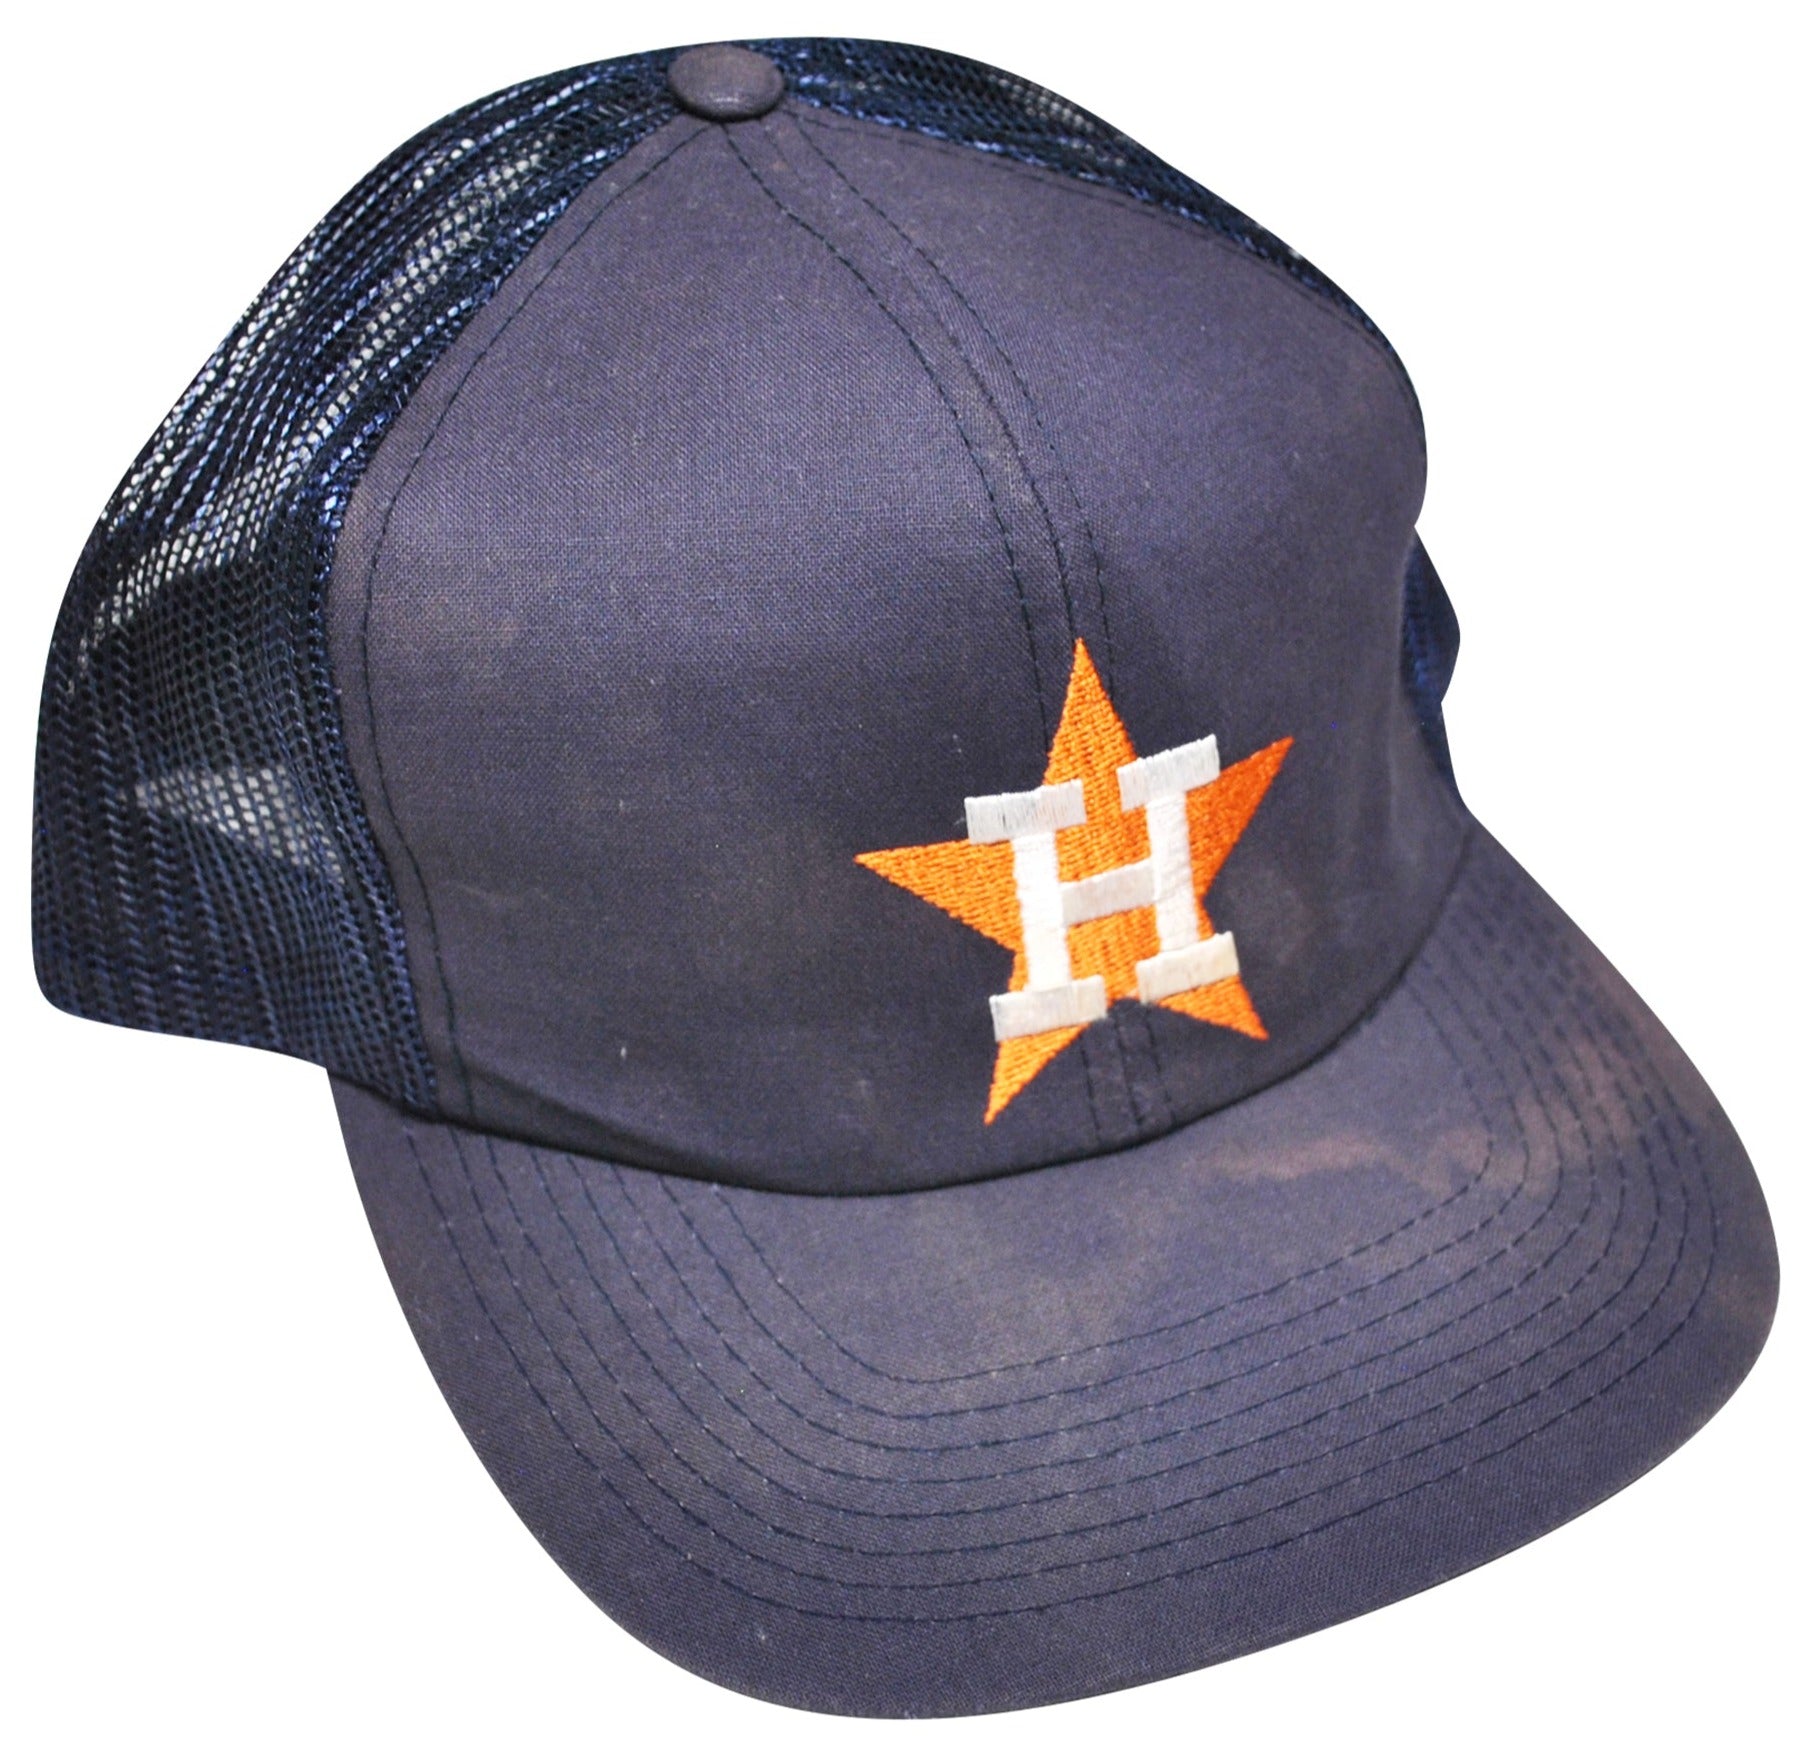 Vintage Houston Astros Snapback – Yesterday's Attic